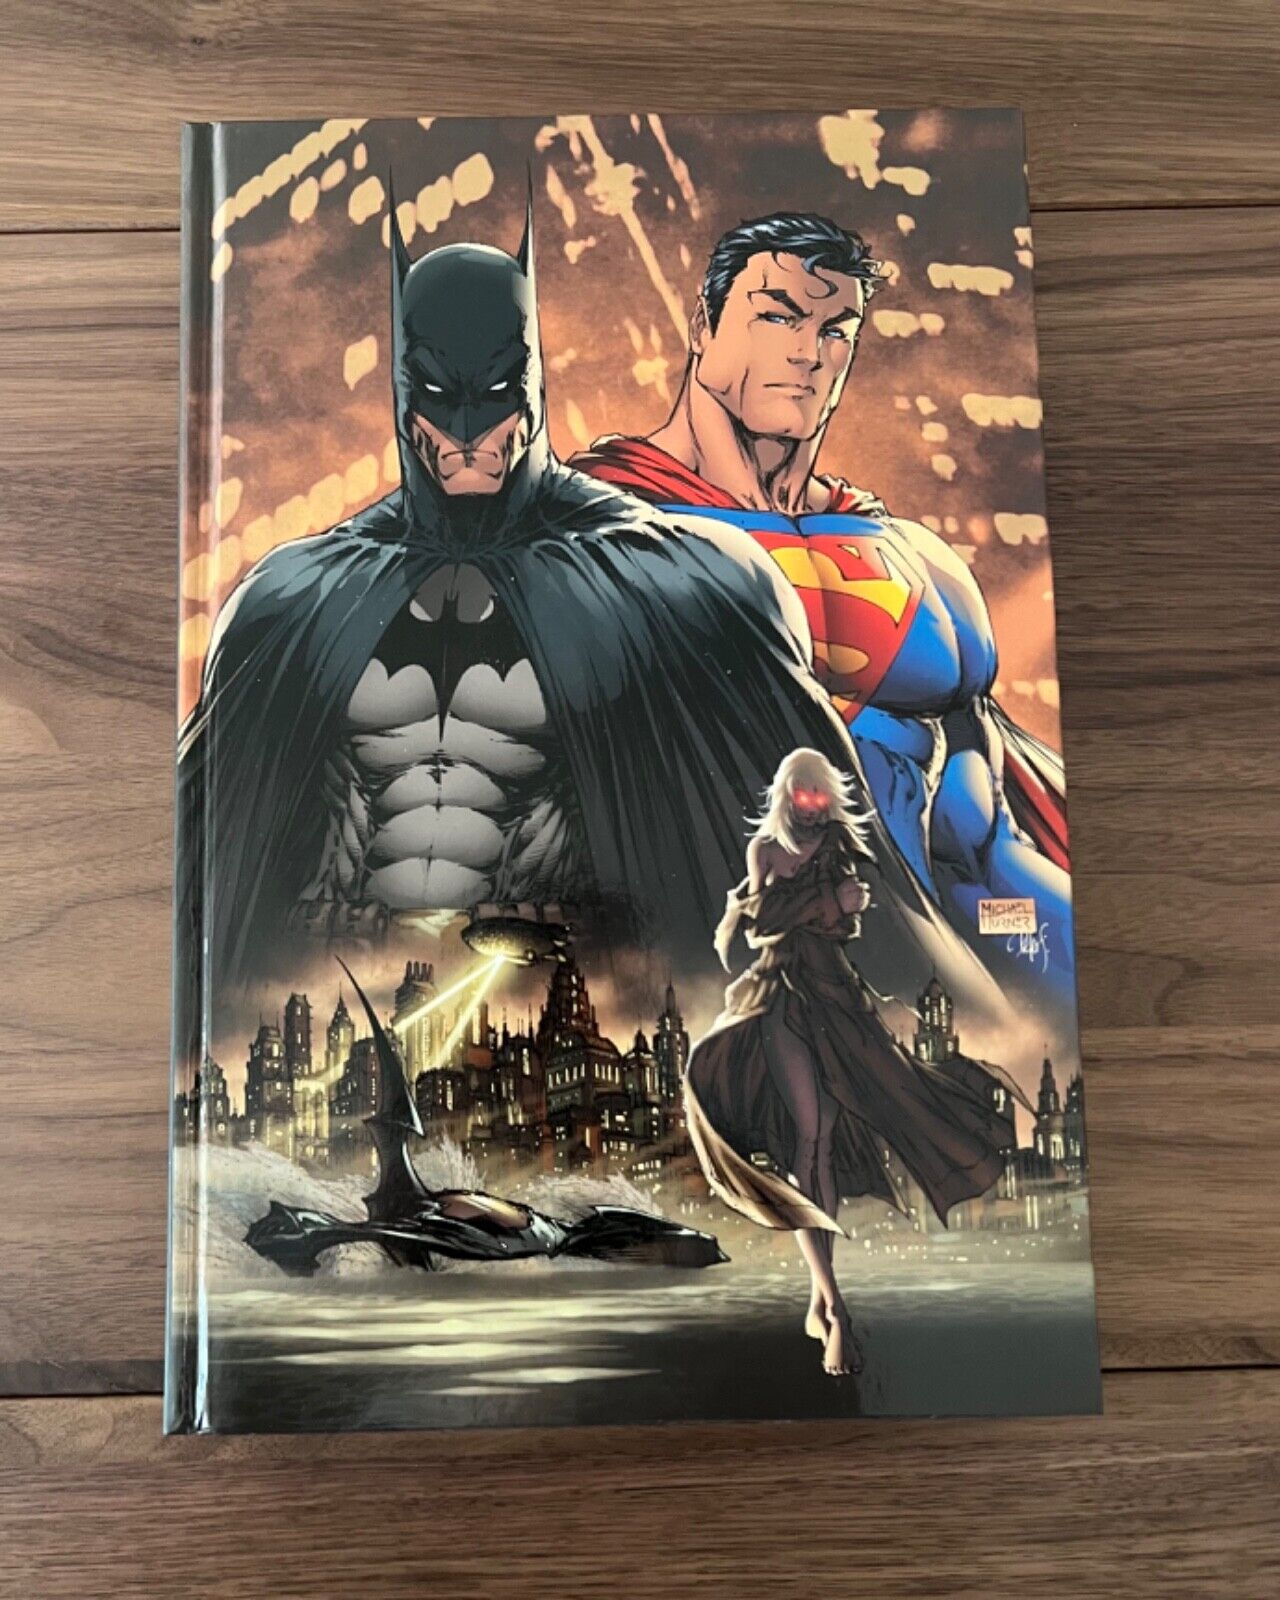 Absolute Superman / Batman Vol 1 (DC Comics, 2013)